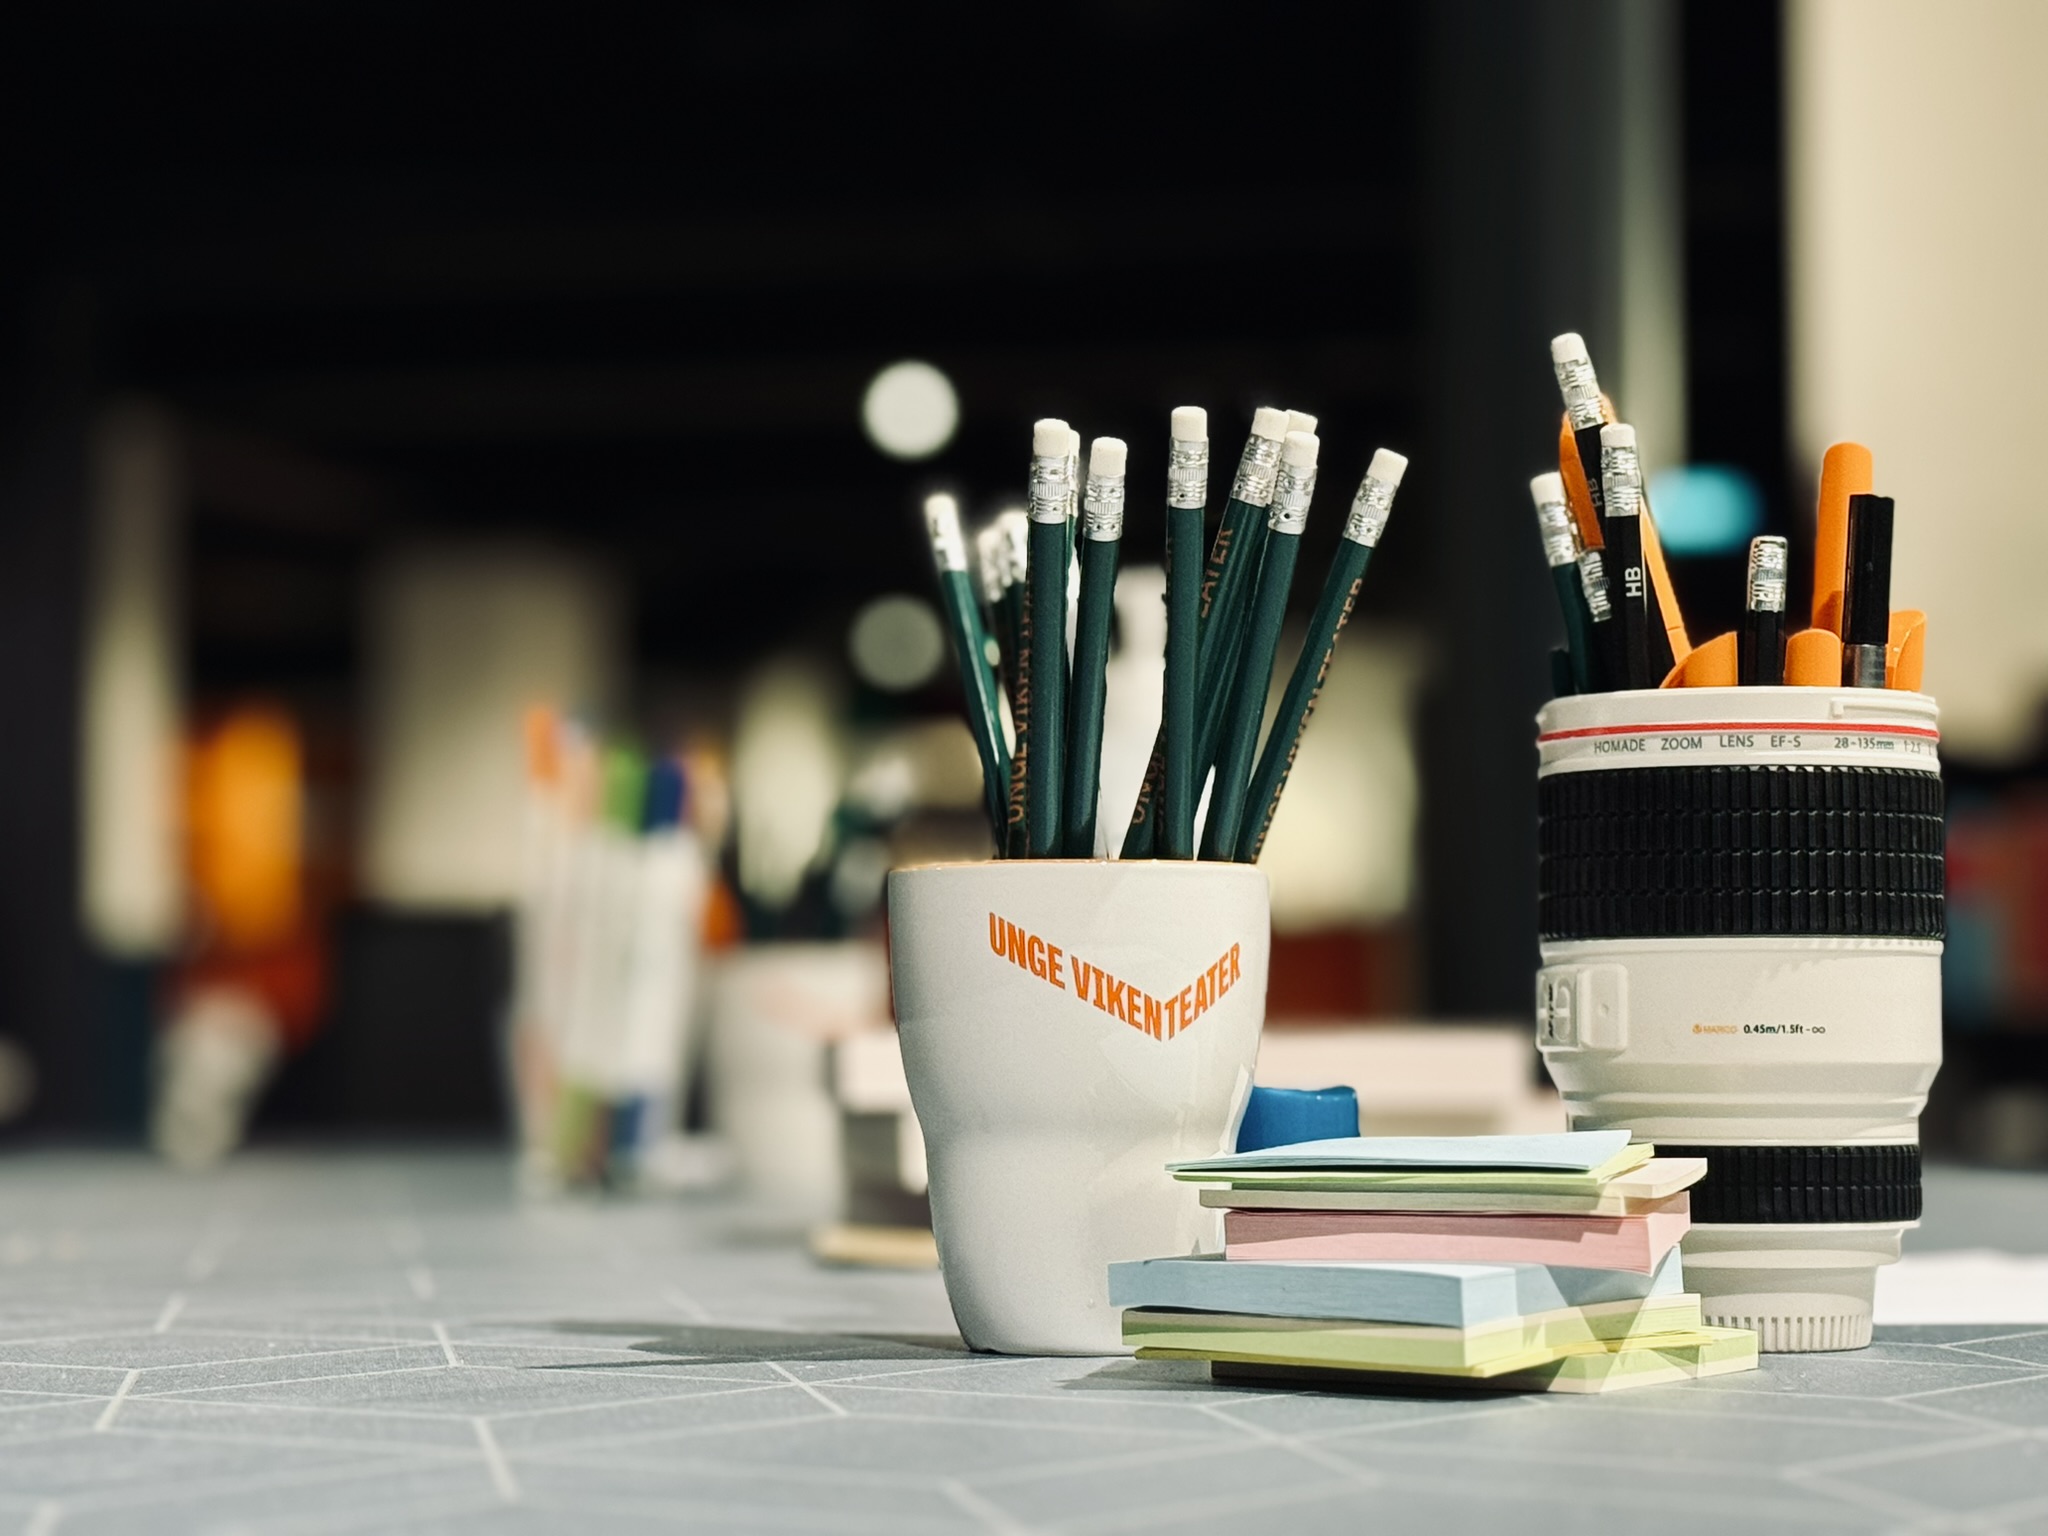 Nærbilde av post-it lapper og blyanter i en Unge Viken-kopp